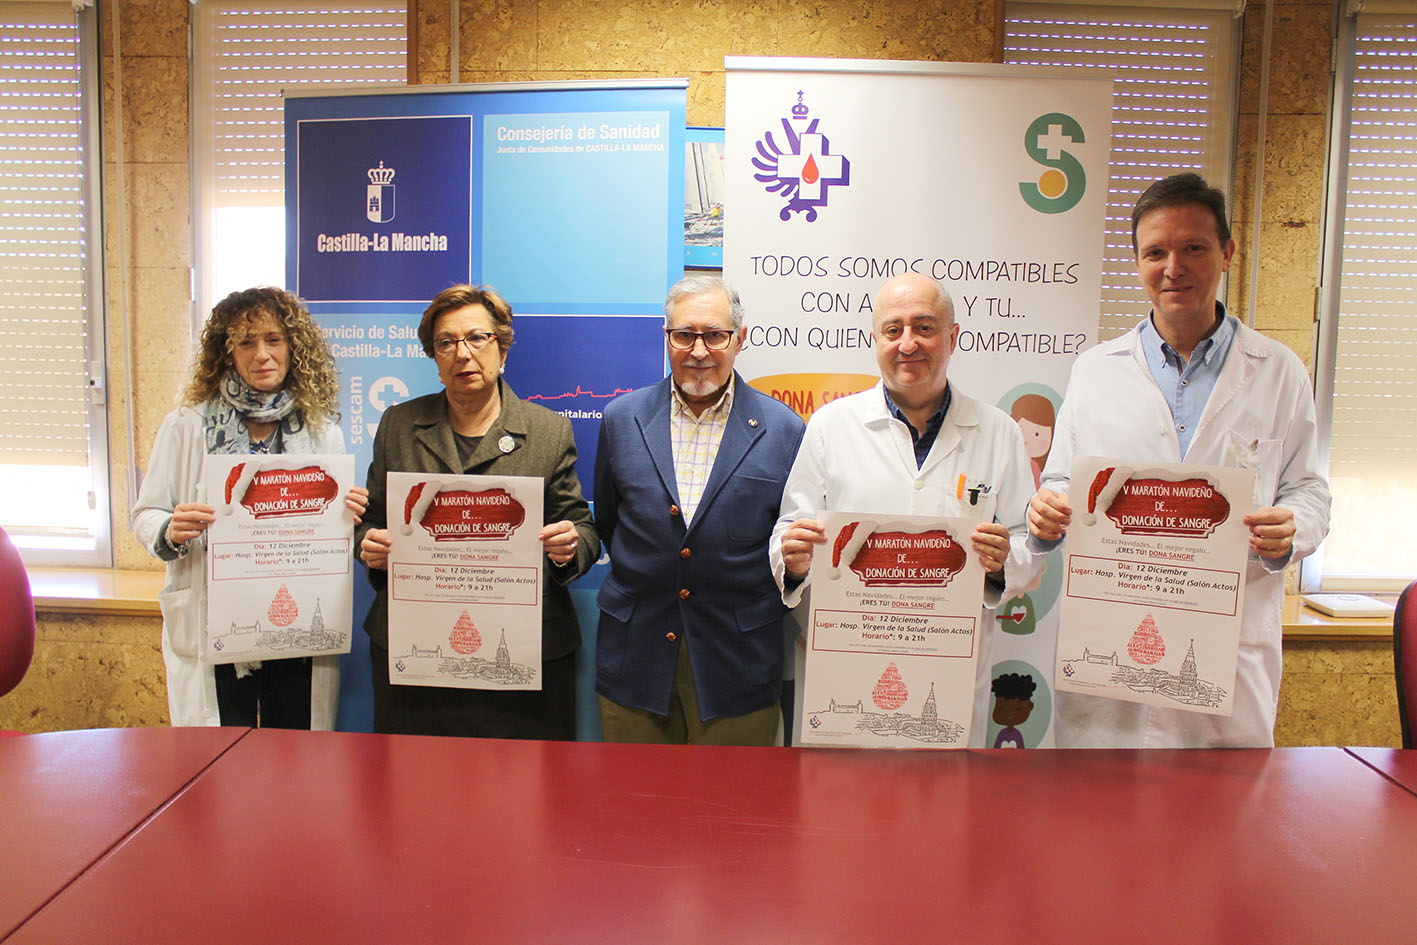 Hoy se ha presentado en Toledo el V Maratón de donación de sangre, que tendrá lugar el miércoles 12 de diciembre